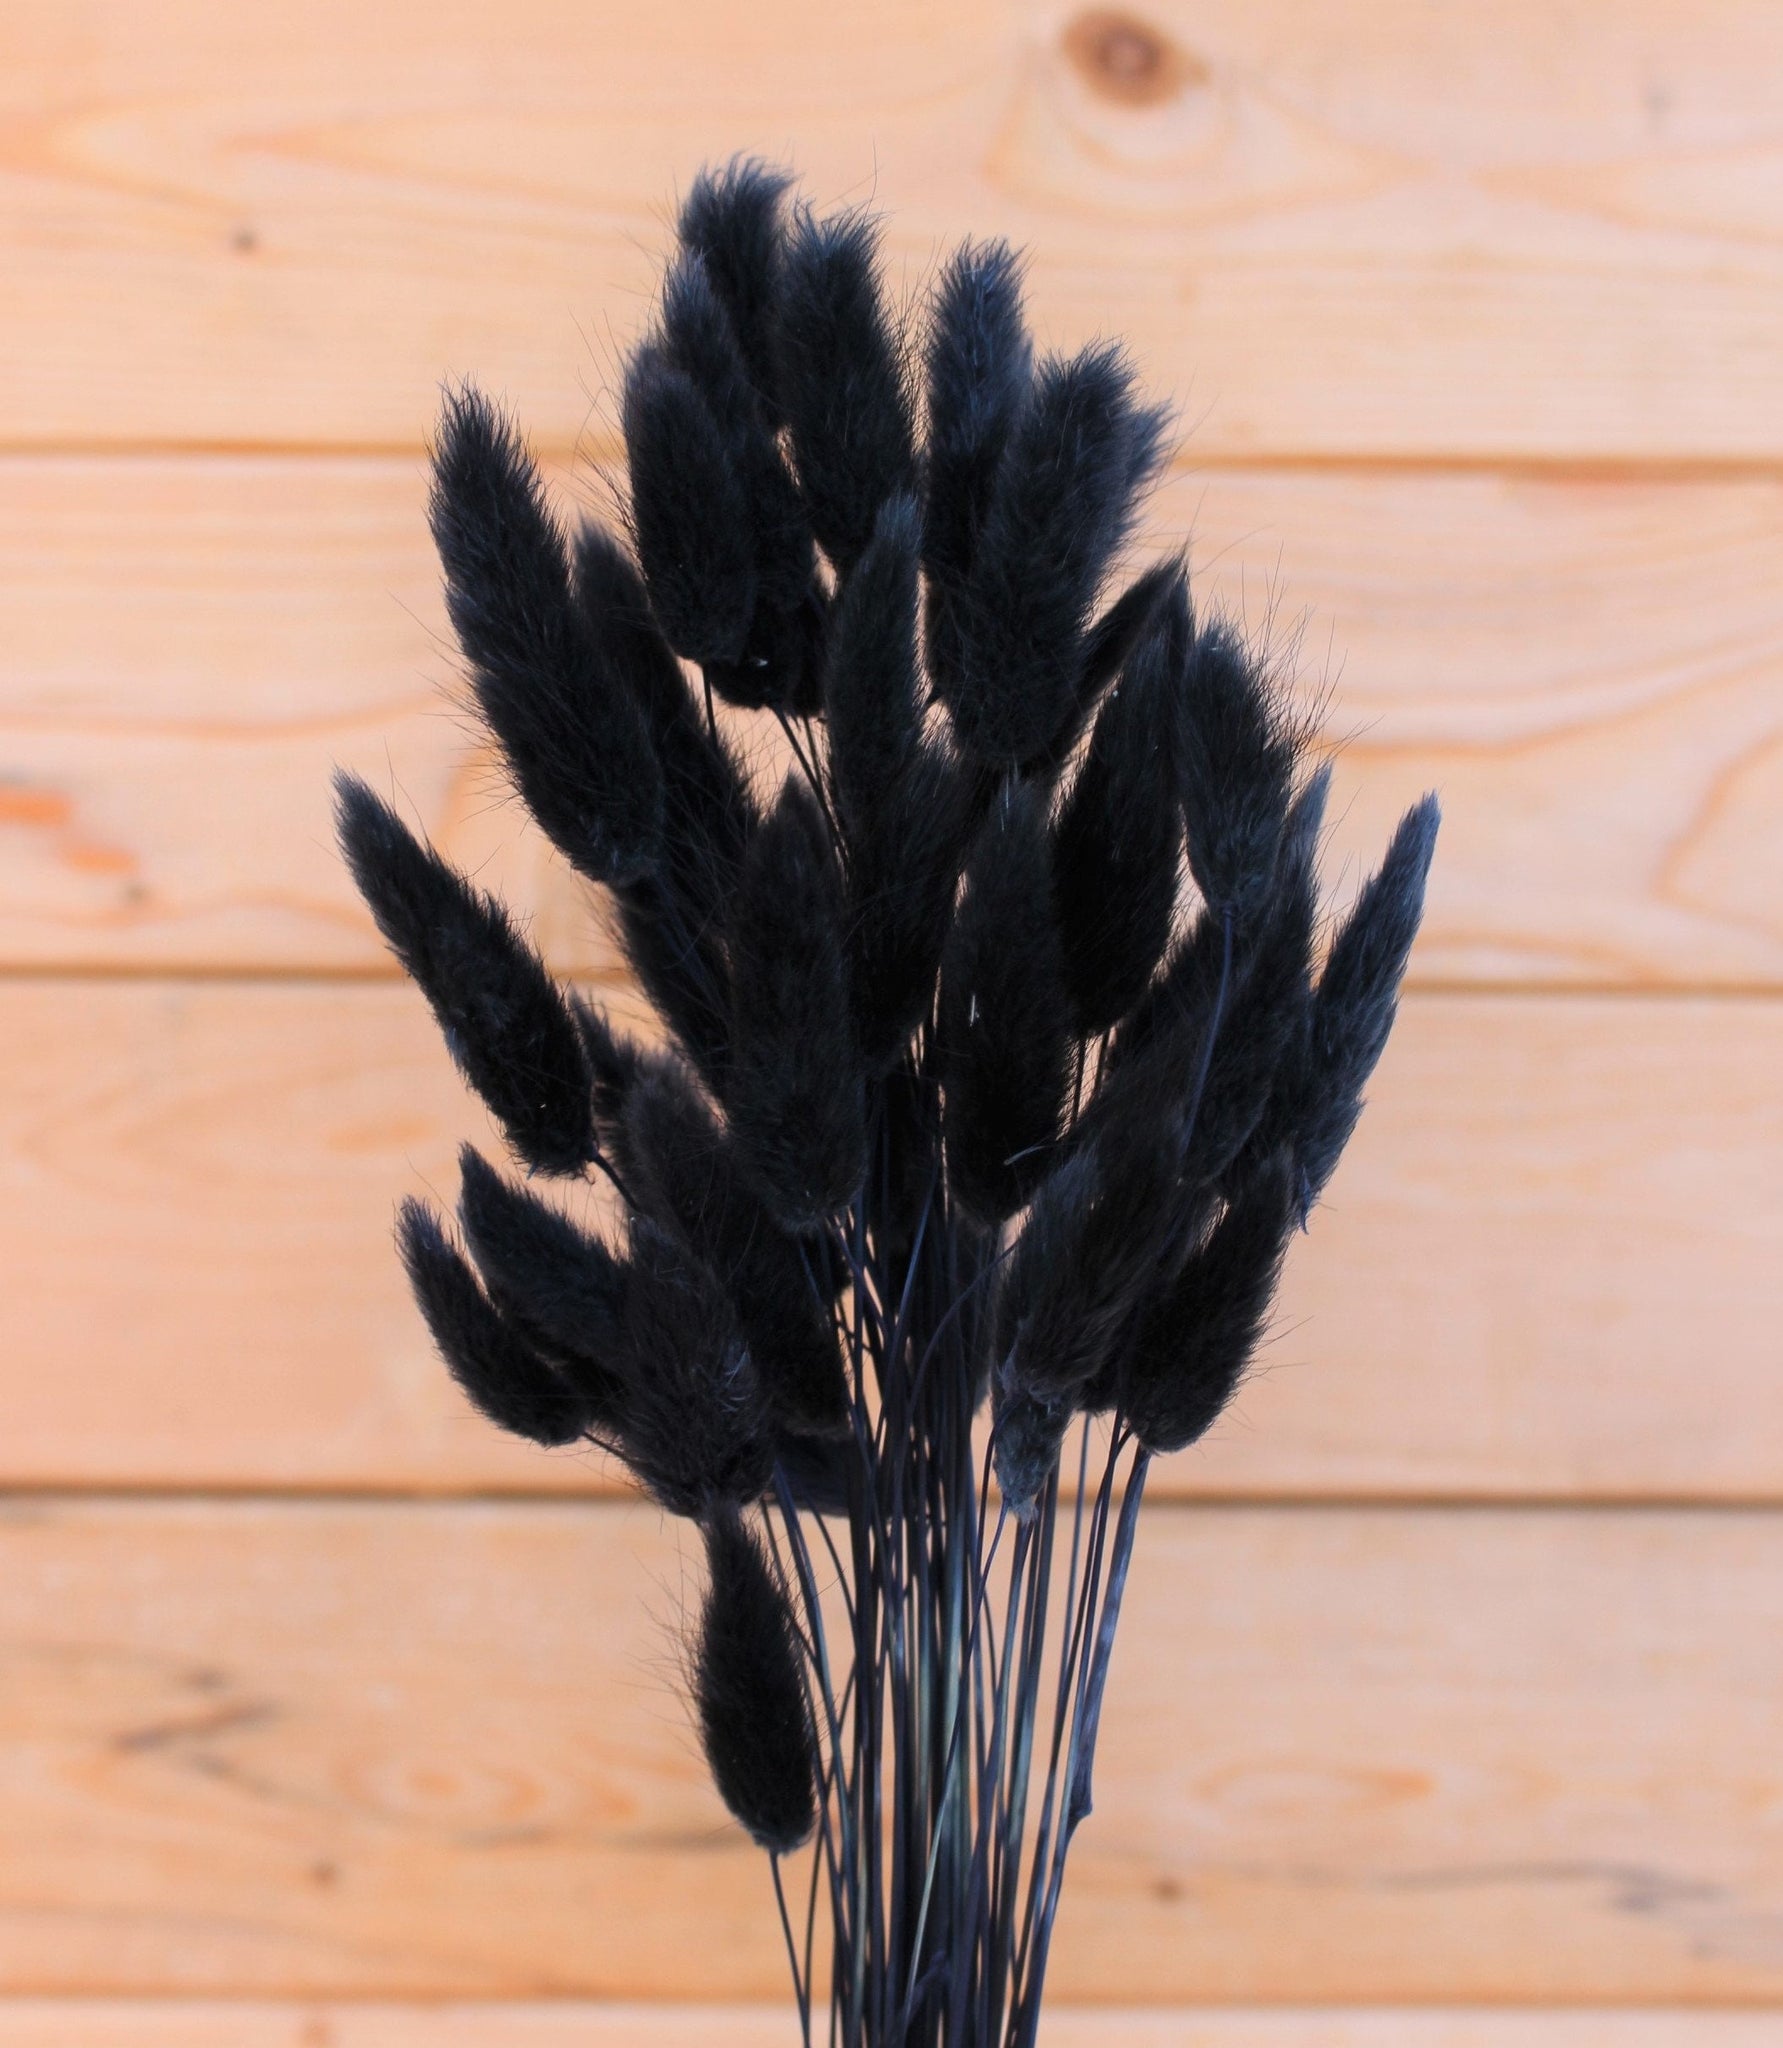 Large Monochrome Black Pampas Grass Bouquet With Black Bunnytails Pampas  Grass Home Decor Dried Flower Bouquets UK 